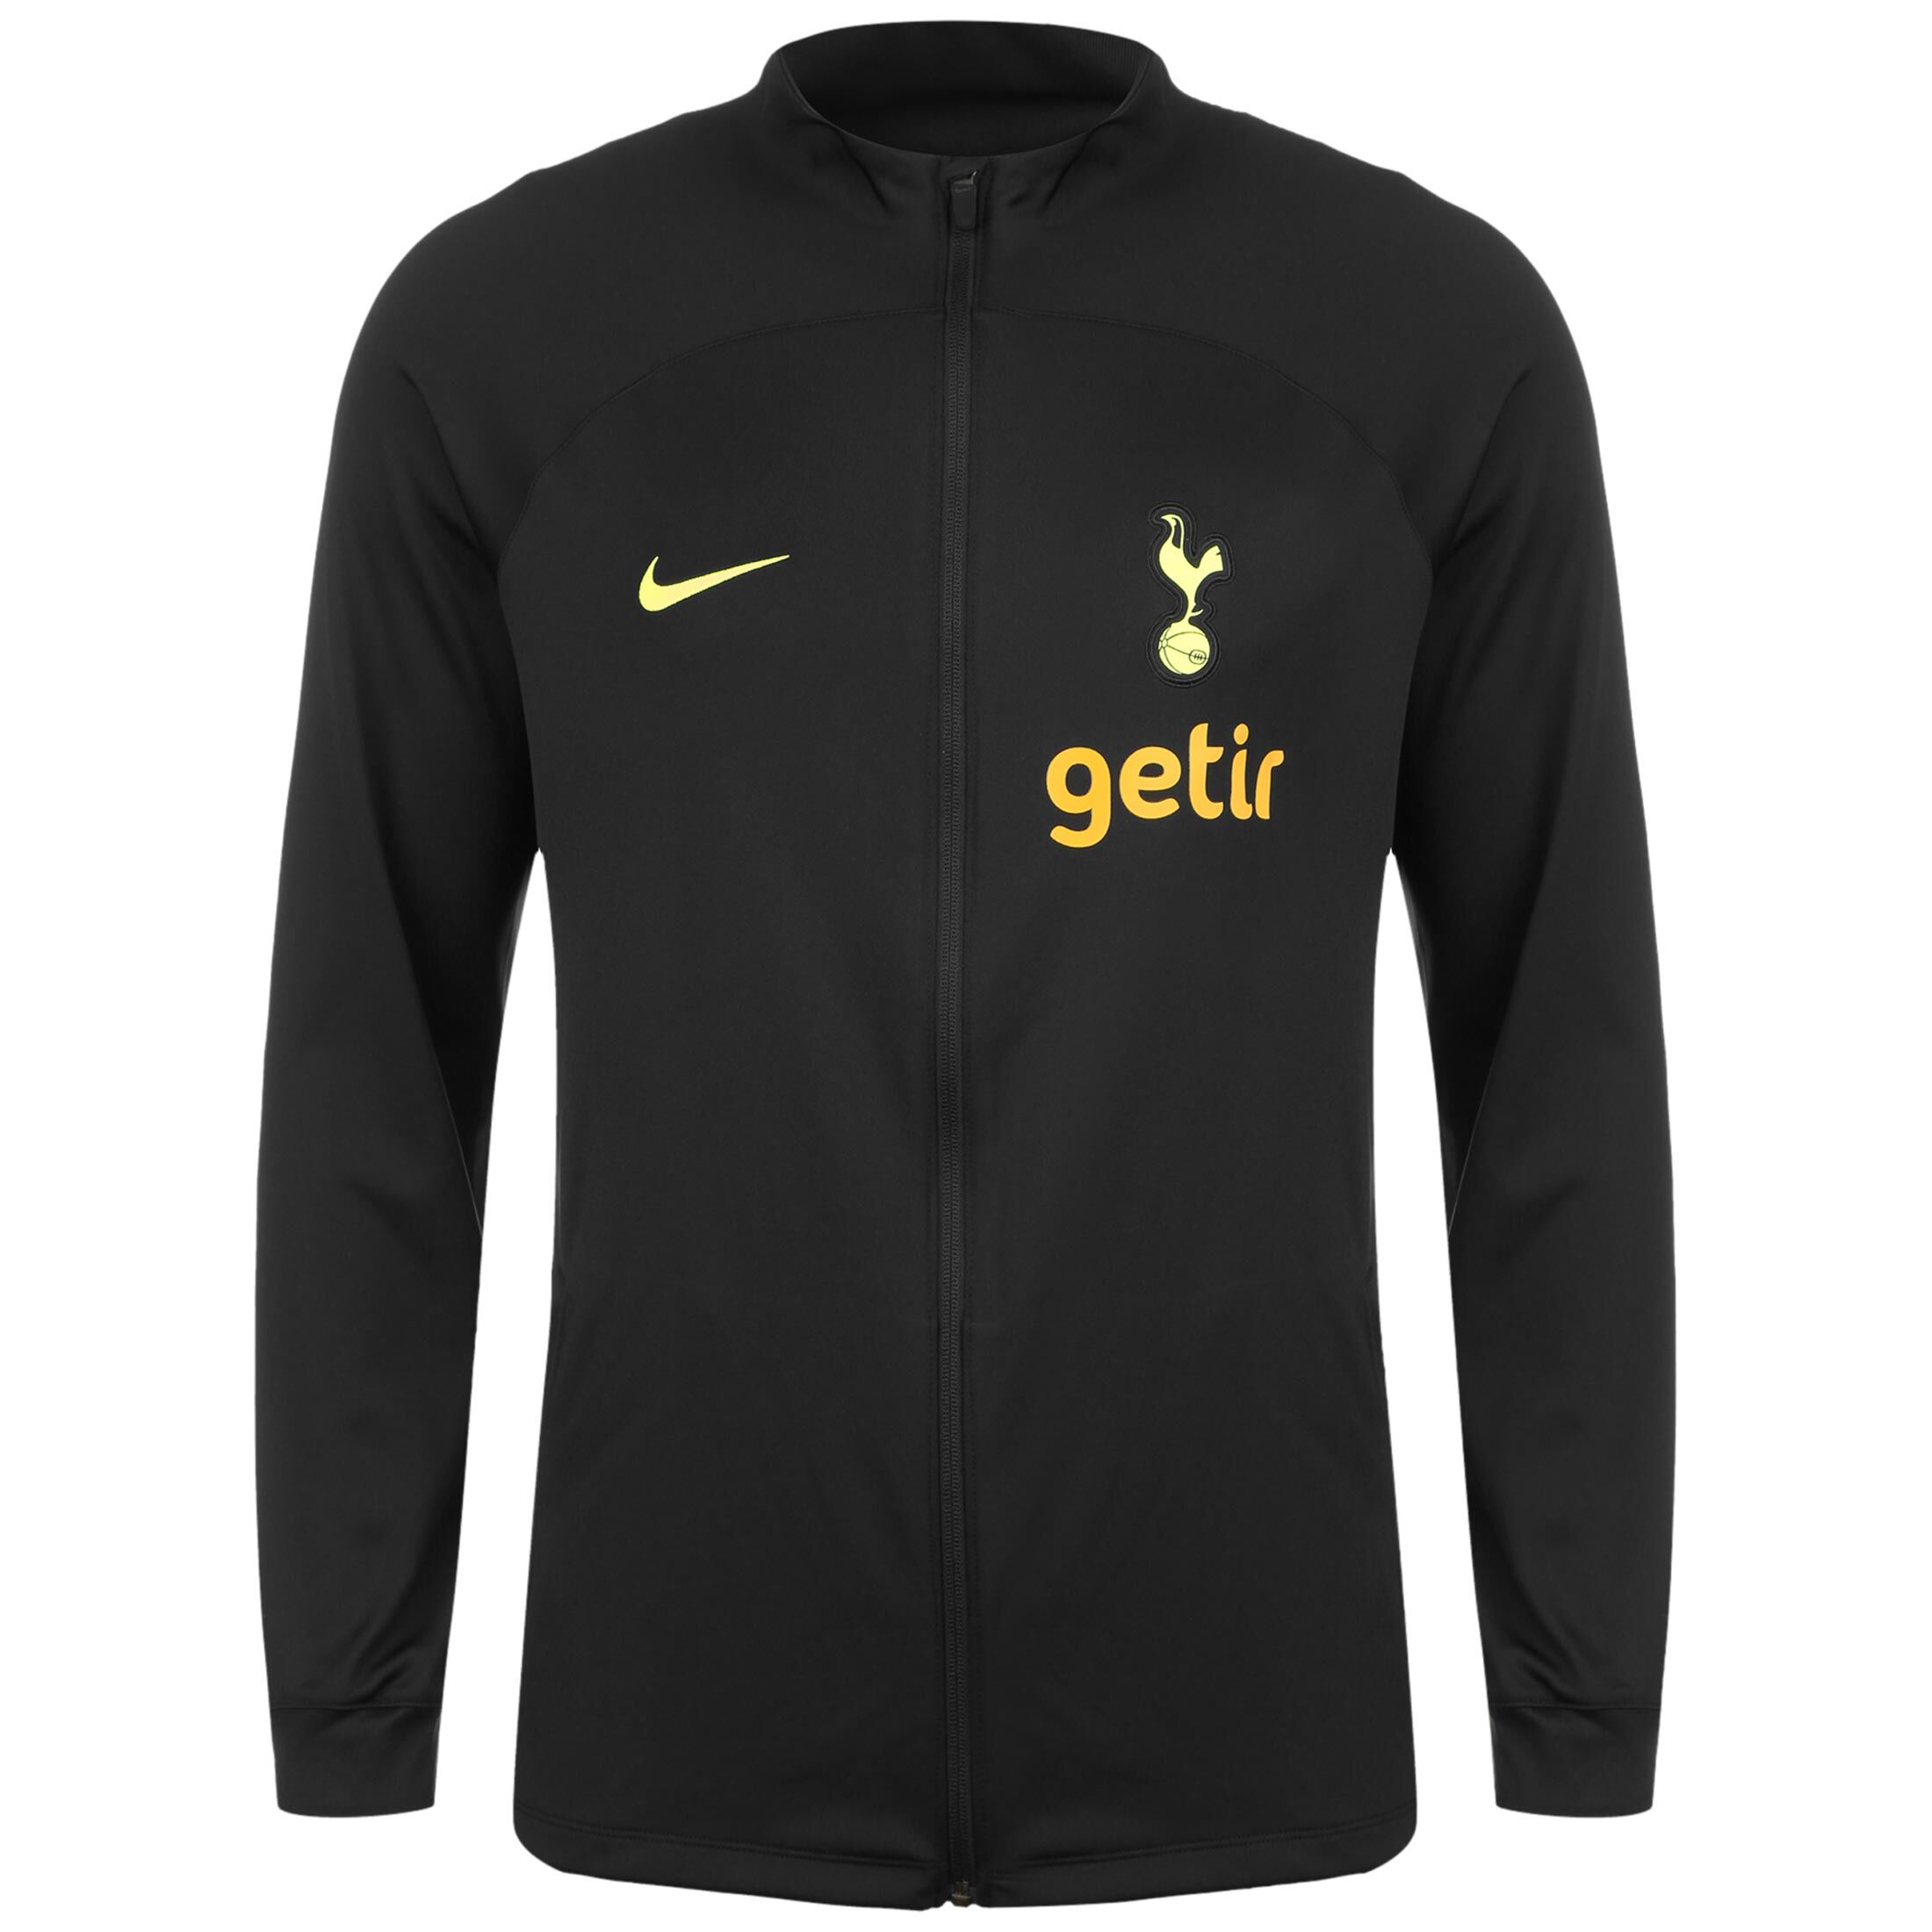 Спортивная куртка Nike Tottenham Hotspur Strike, черный спортивная куртка nike tottenham hotspur strike черный